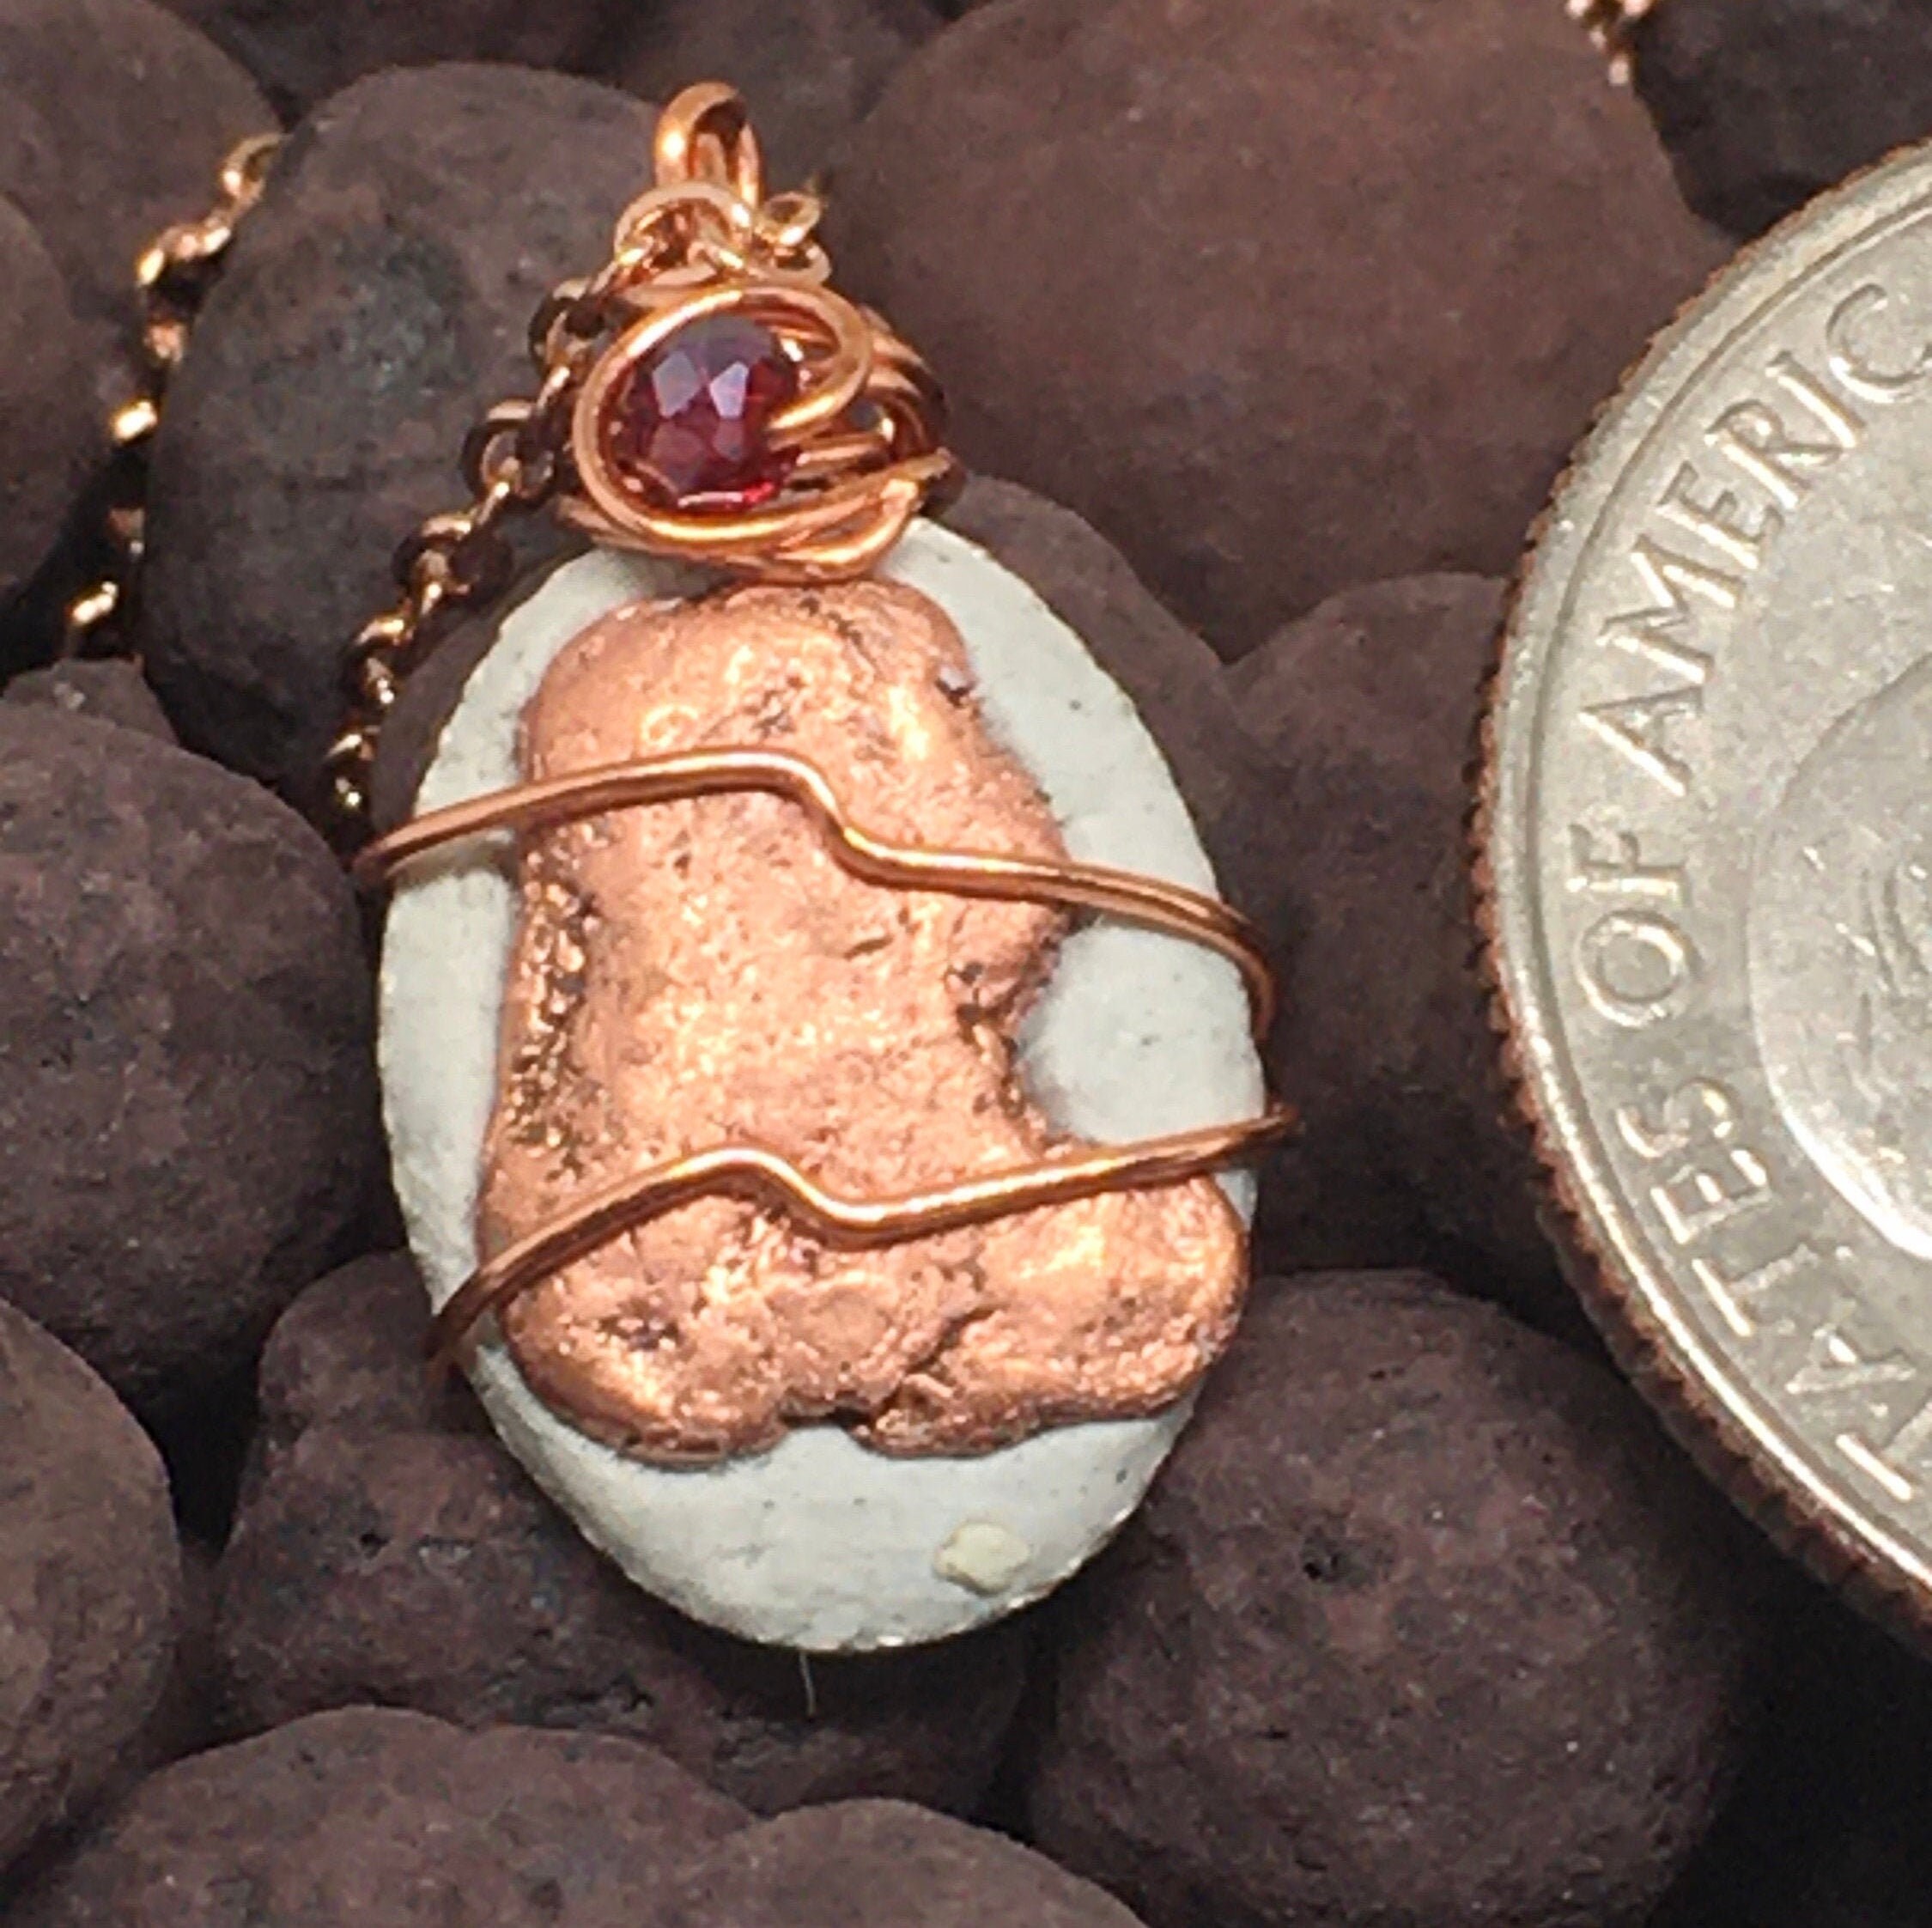 Michigan Copper Necklace